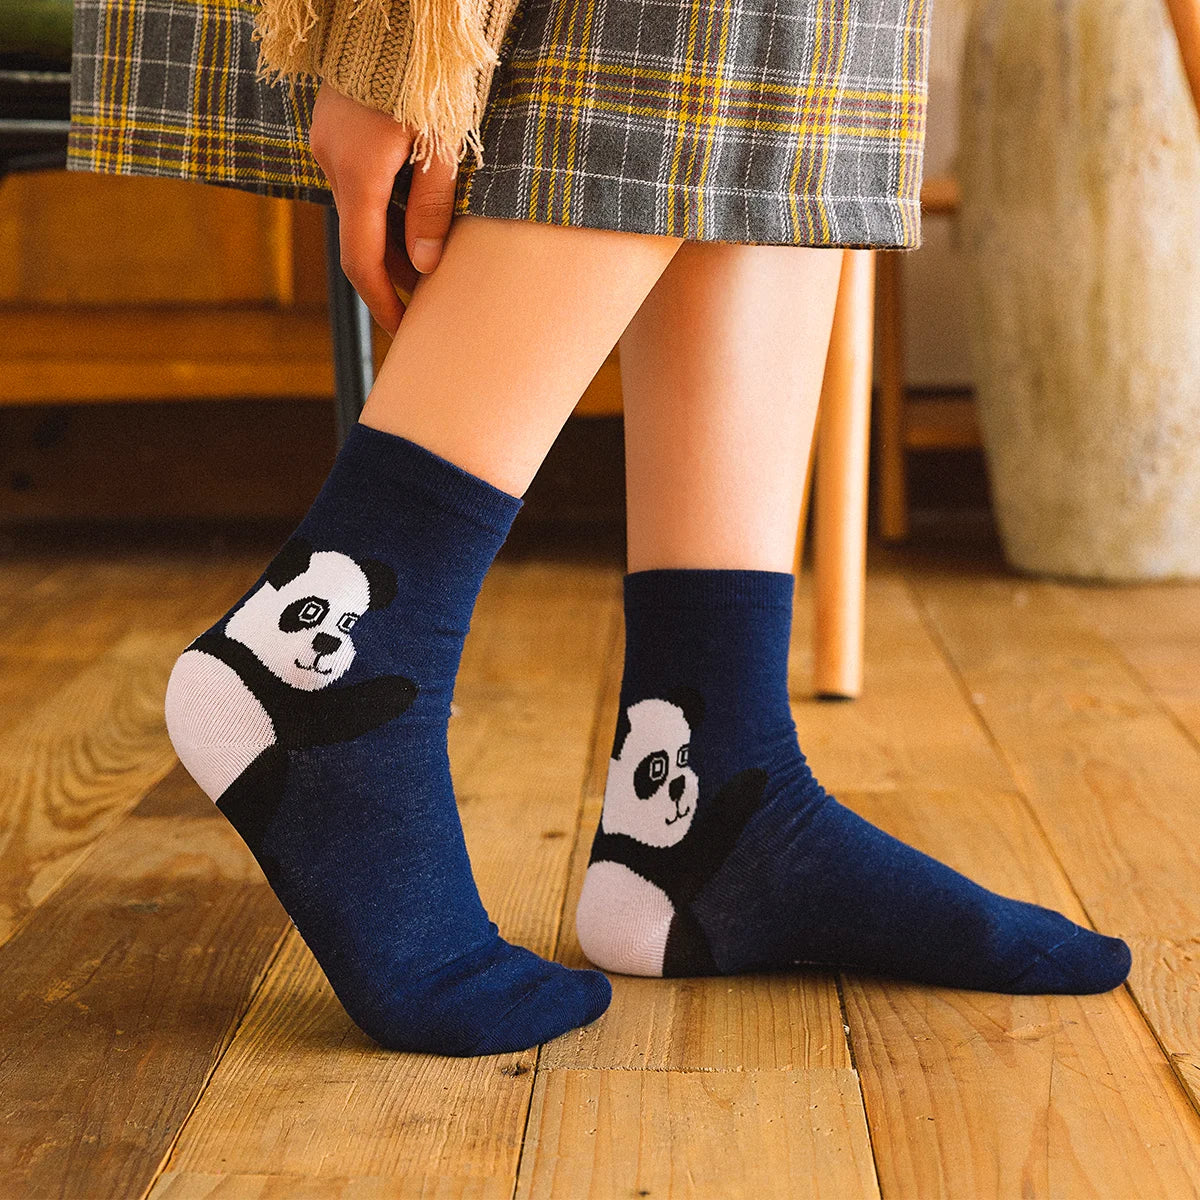 Chaussettes bleu adultes en coton représentant un panda sur le talon de la chaussette | Chaussettes douces et respirantes | Un excellent choix pour les adultes qui aiment les animaux